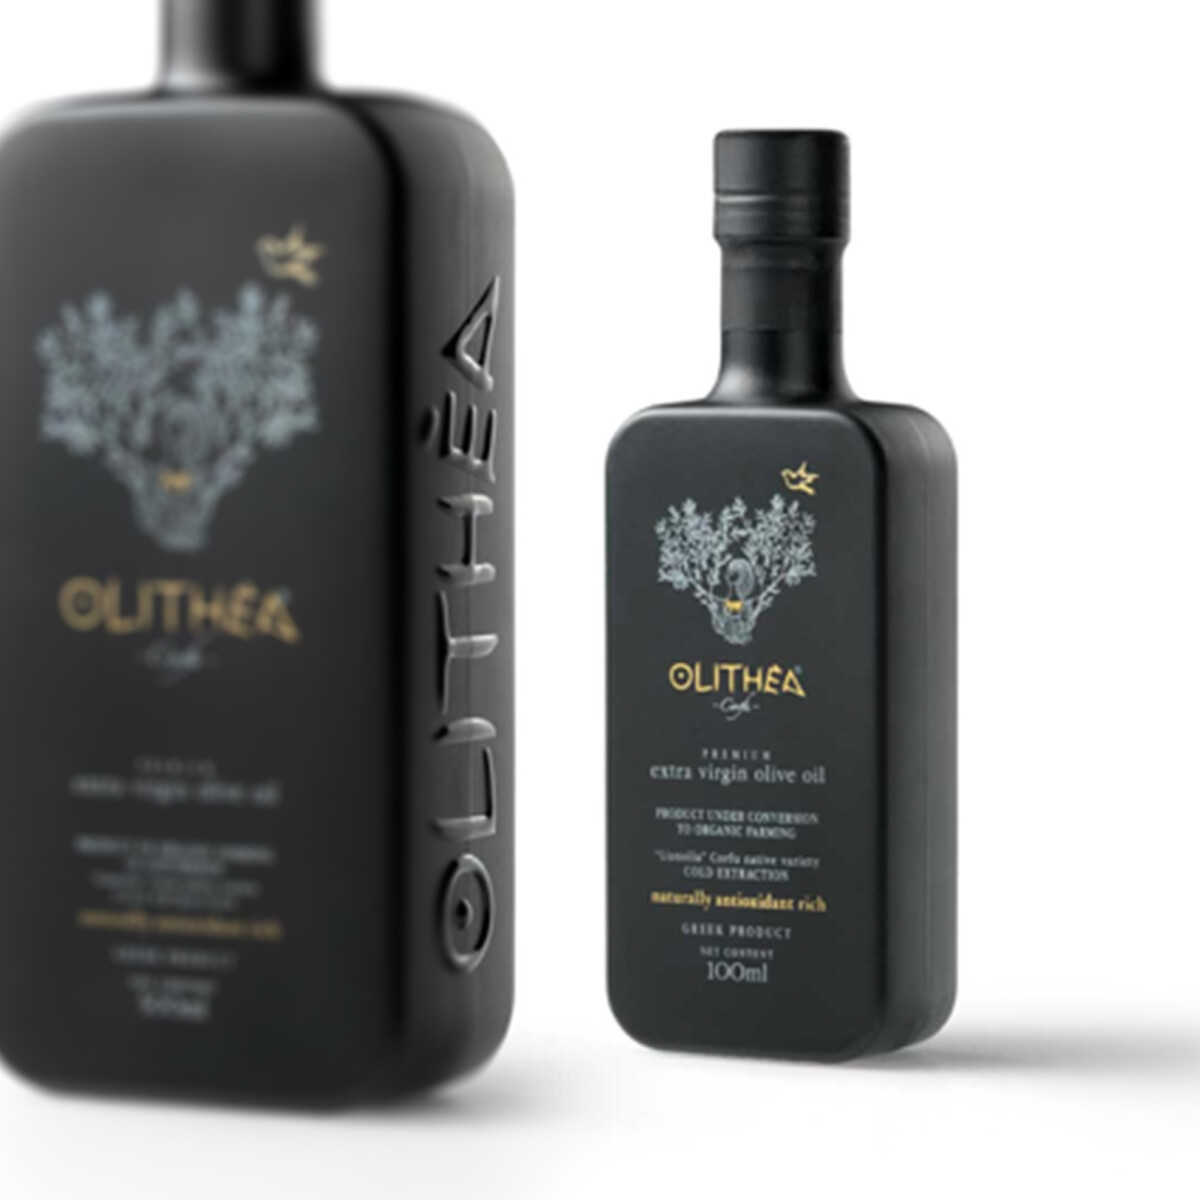 Olithea Premium Olivenöl 100 ml